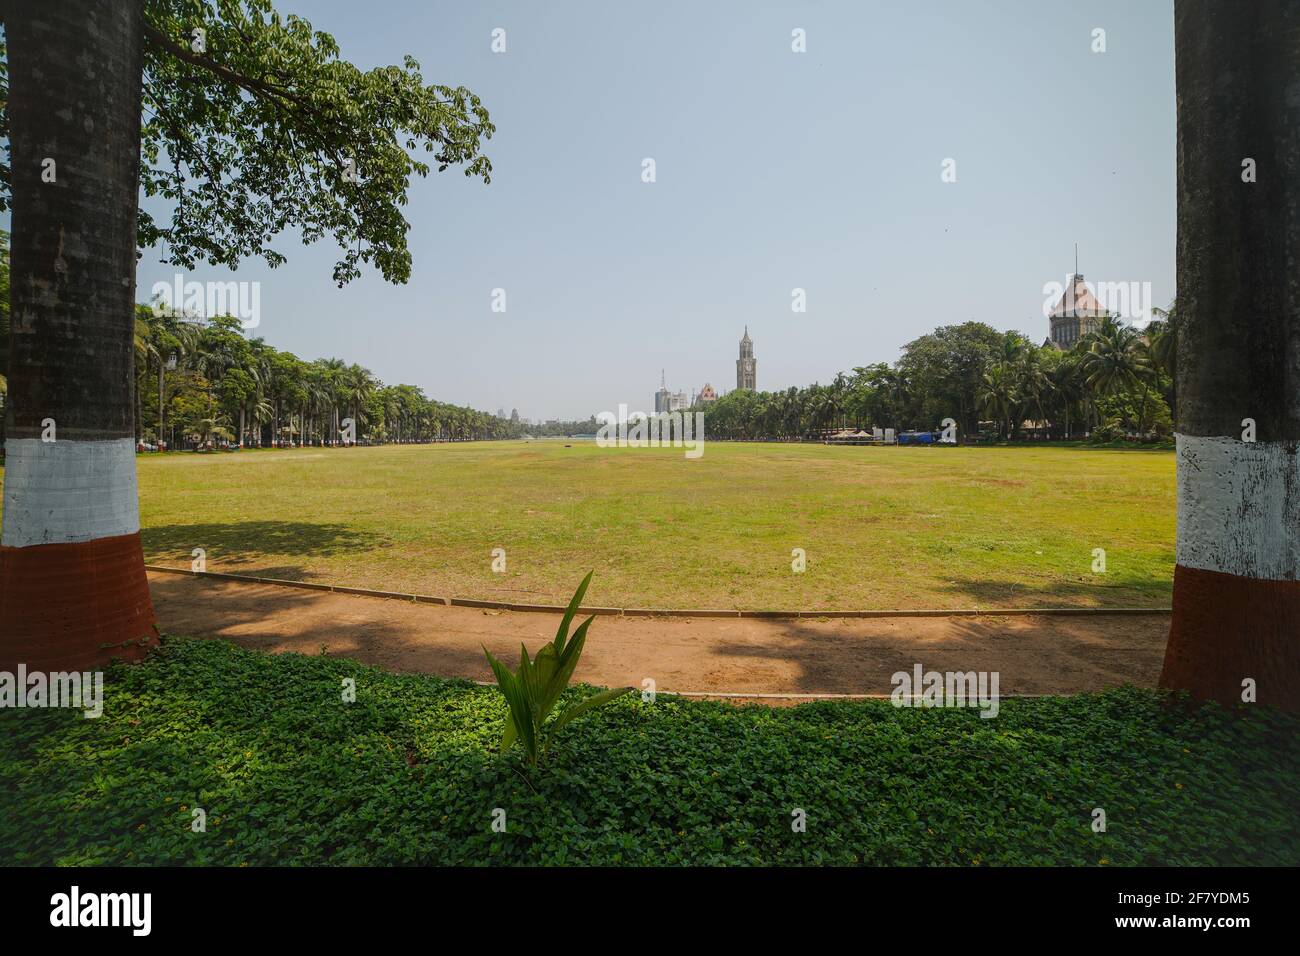 Oval Ground In South Mumbai, Playground Empty Due To Coronavirus Pandemic Wide long shot Mumbai - India - 04 11 2021 Stock Photo